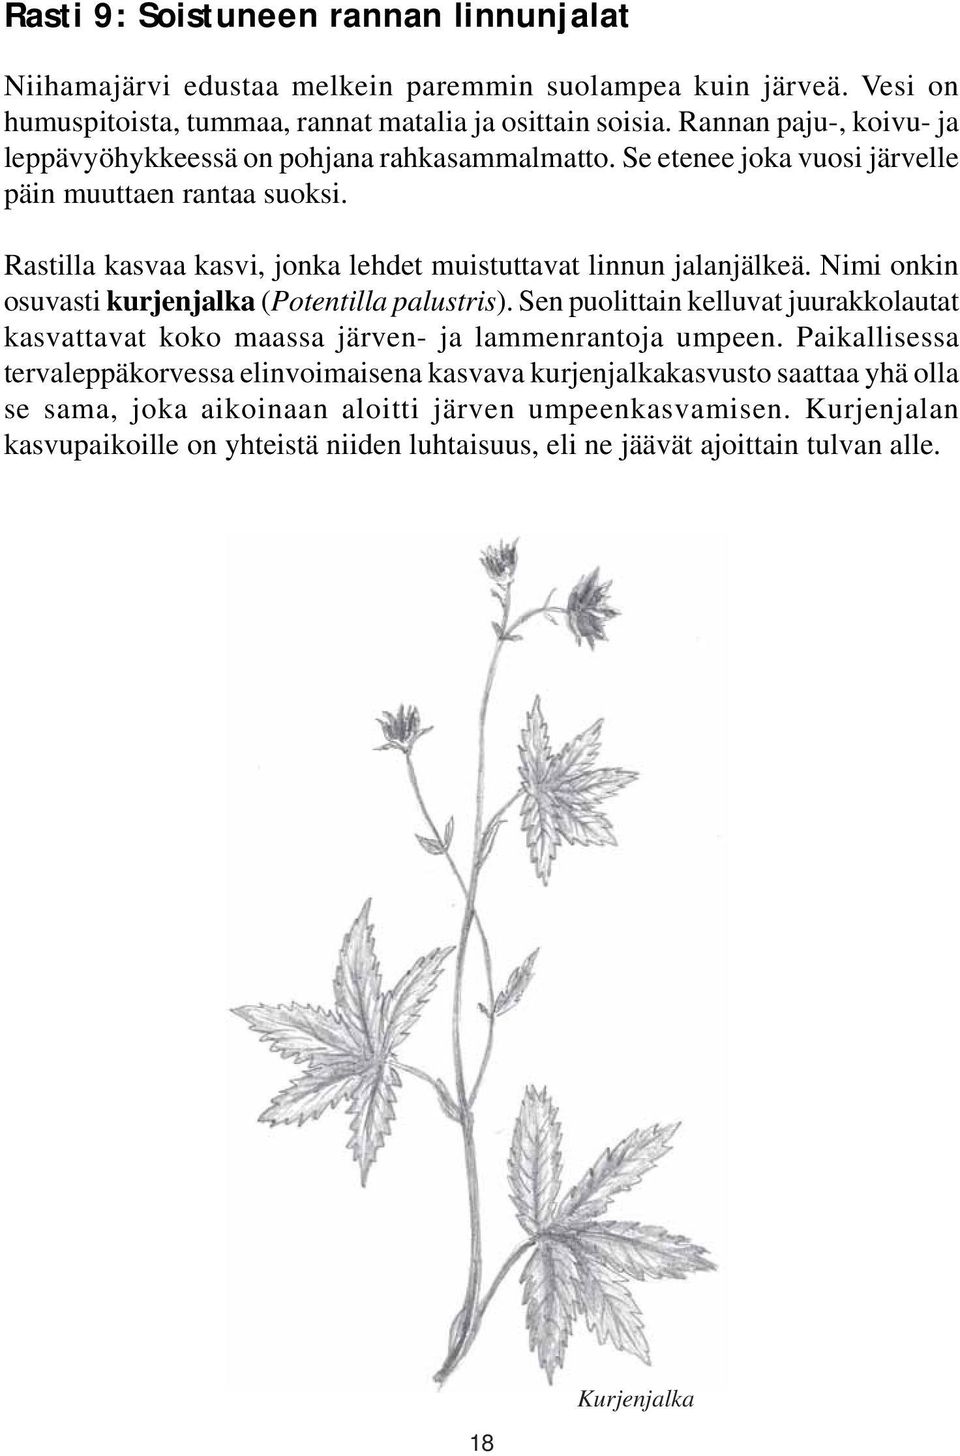 Rastilla kasvaa kasvi, jonka lehdet muistuttavat linnun jalanjälkeä. Nimi onkin osuvasti kurjenjalka (Potentilla palustris).